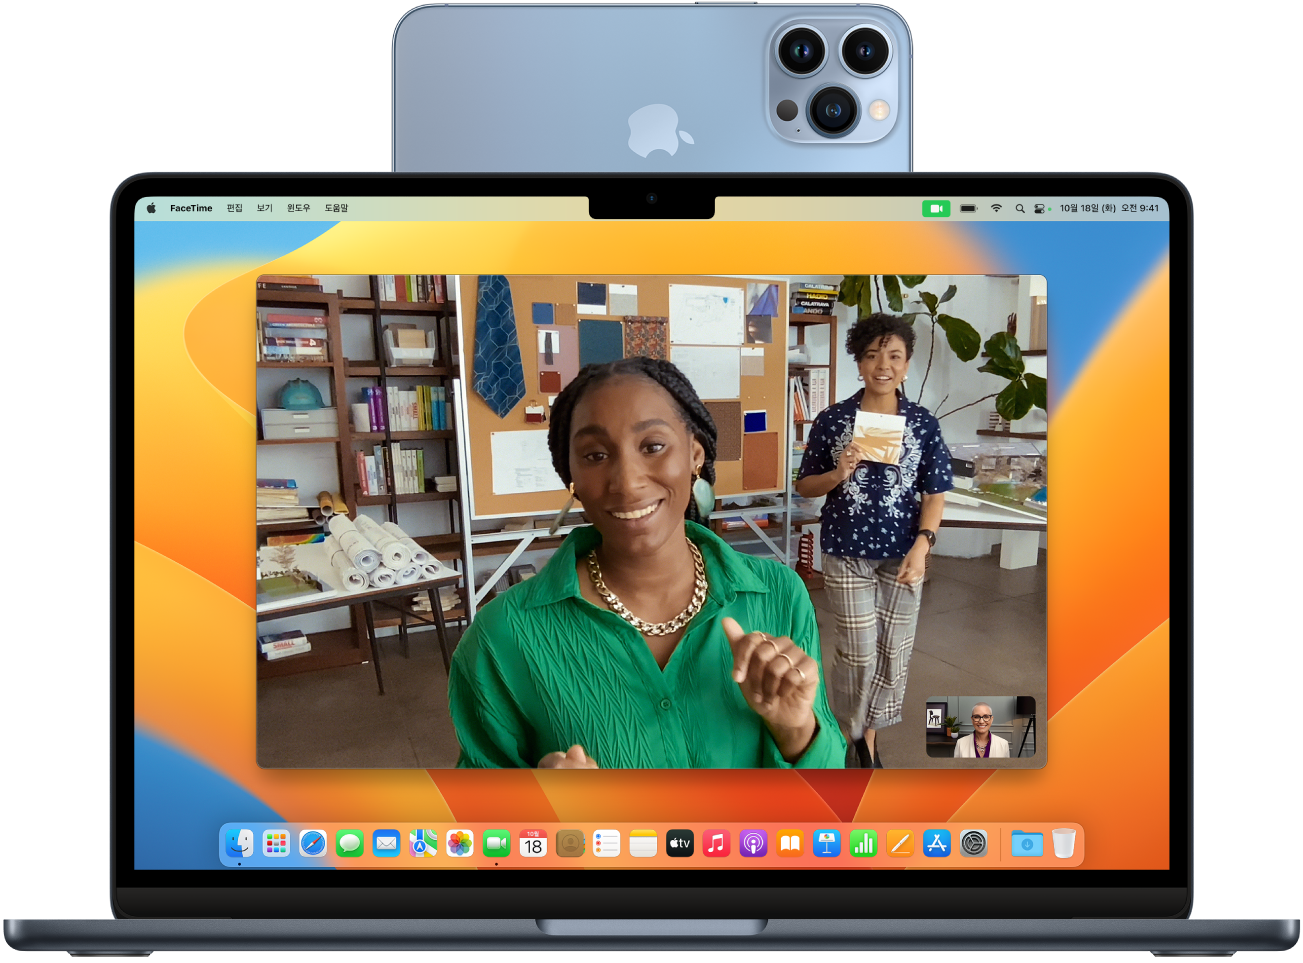 Mac 디스플레이 상단에 iPhone을 올려놓고 웹캠으로 사용하는 모습. iPhone 카메라에서 인식된 이미지를 Mac 디스플레이에서 볼 수 있음.